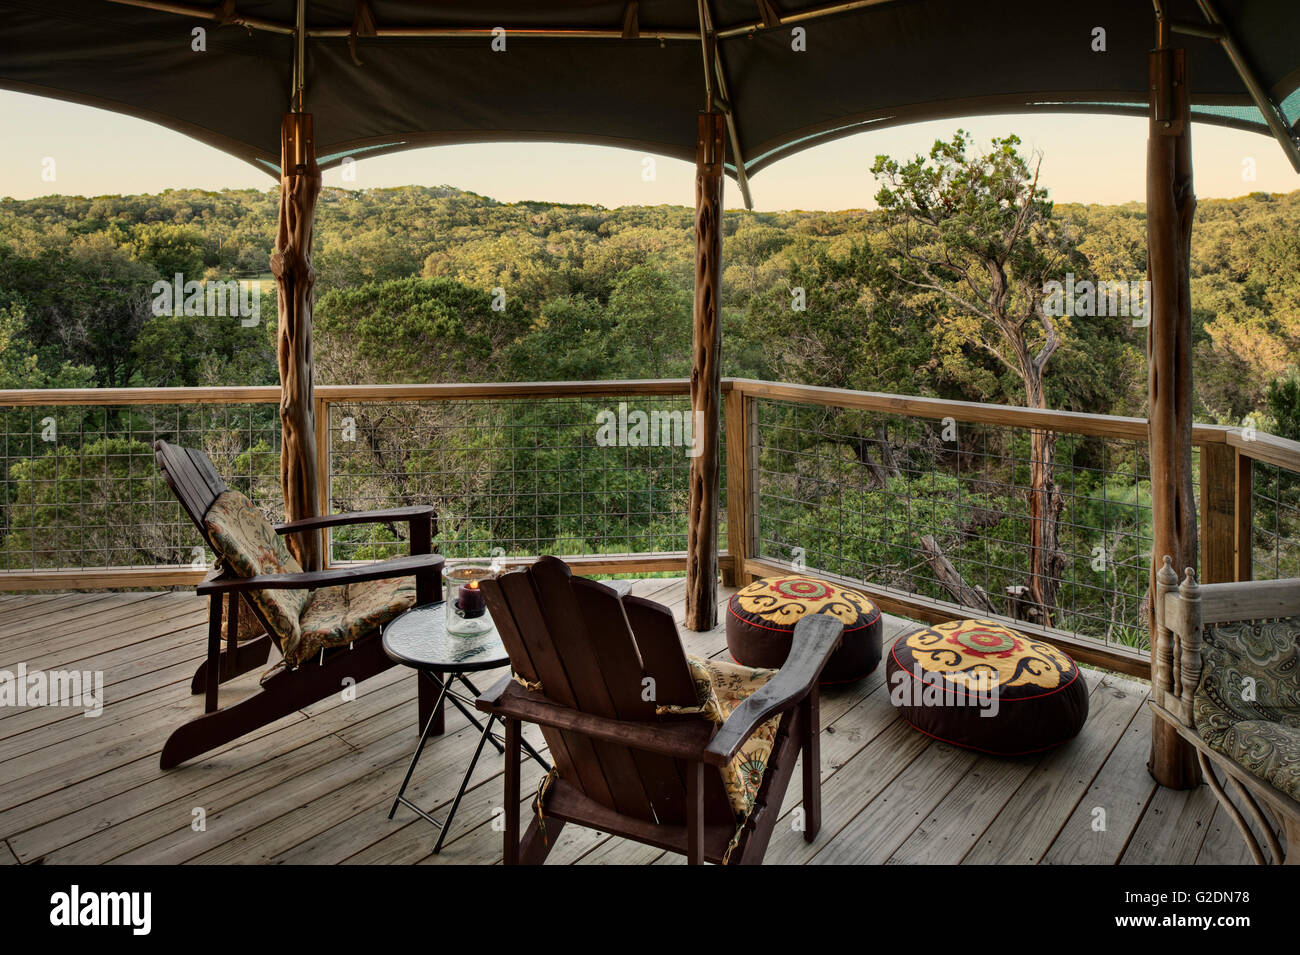 Veranda des Luxus-Camping-Zelt Stockfoto